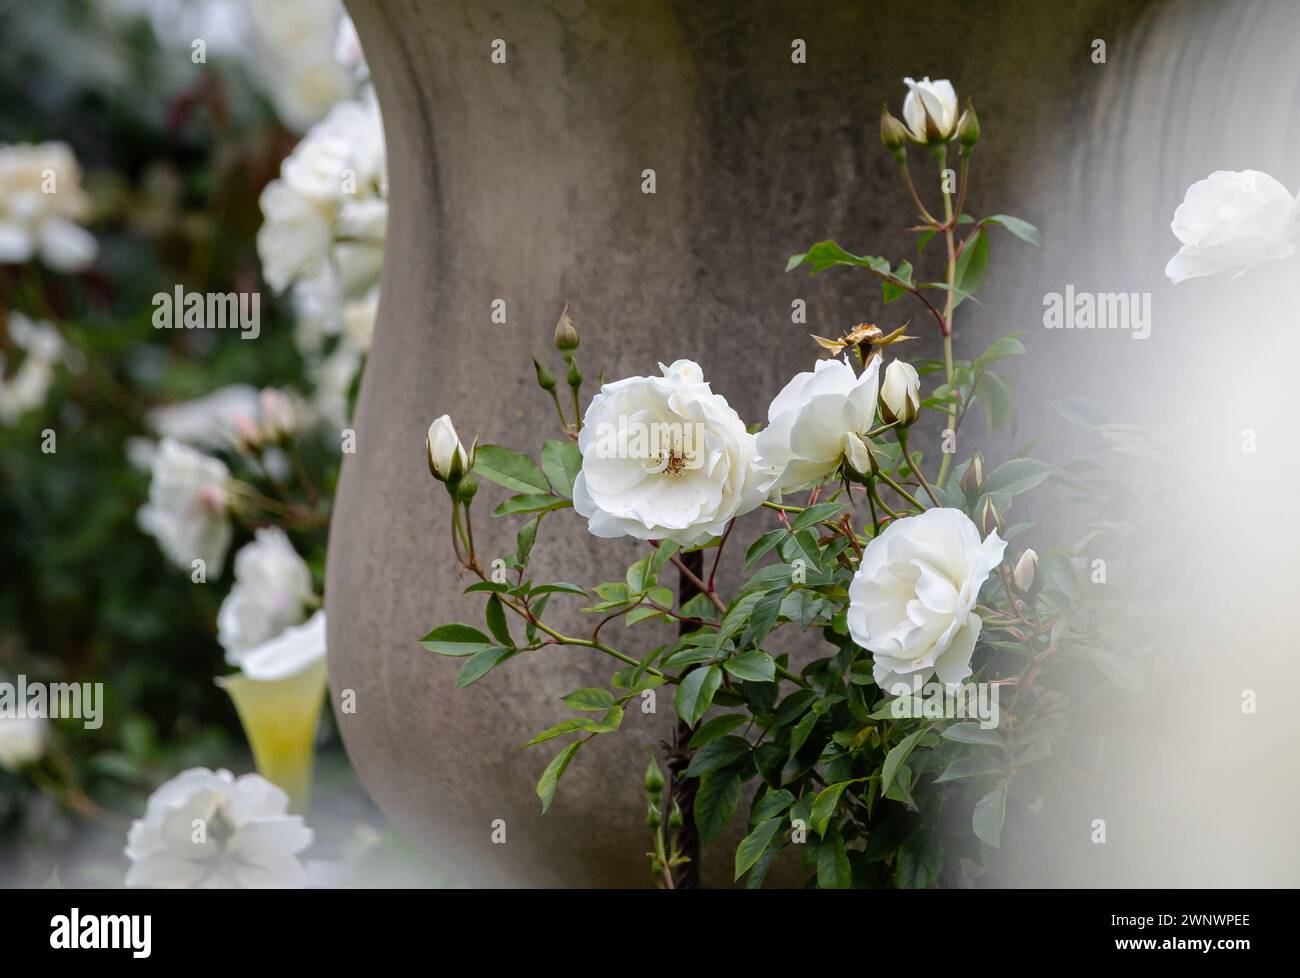 Fiori bianchi rose di Iceberg carta da parati cespuglio, splendidi fiori di Bush, giardino botanico in crescita, parco all'aperto. bocciolo di fiori delicato e tenero su bac grigio Foto Stock